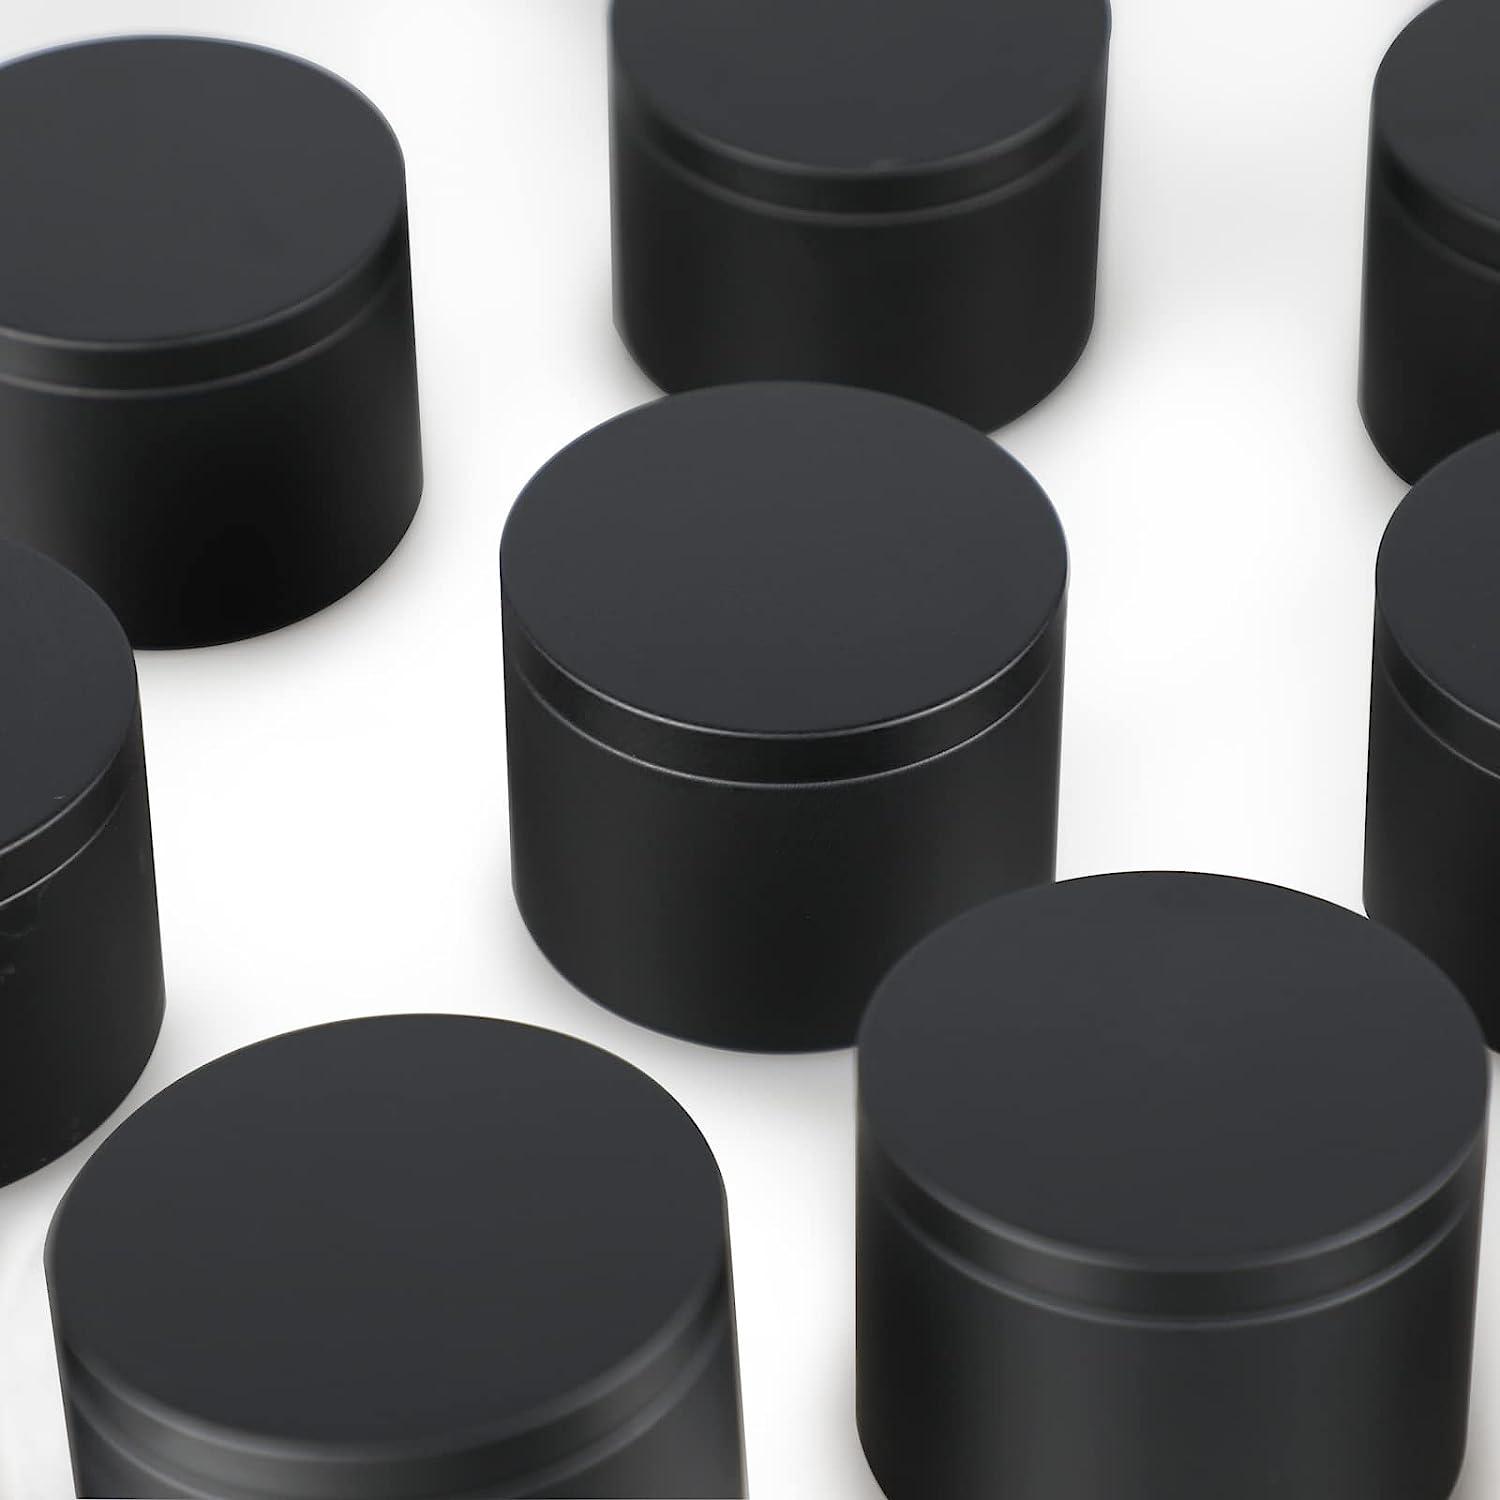 Black Candle Tins 8 oz, 24 Pcs Matte Black Candle Jar with Lids